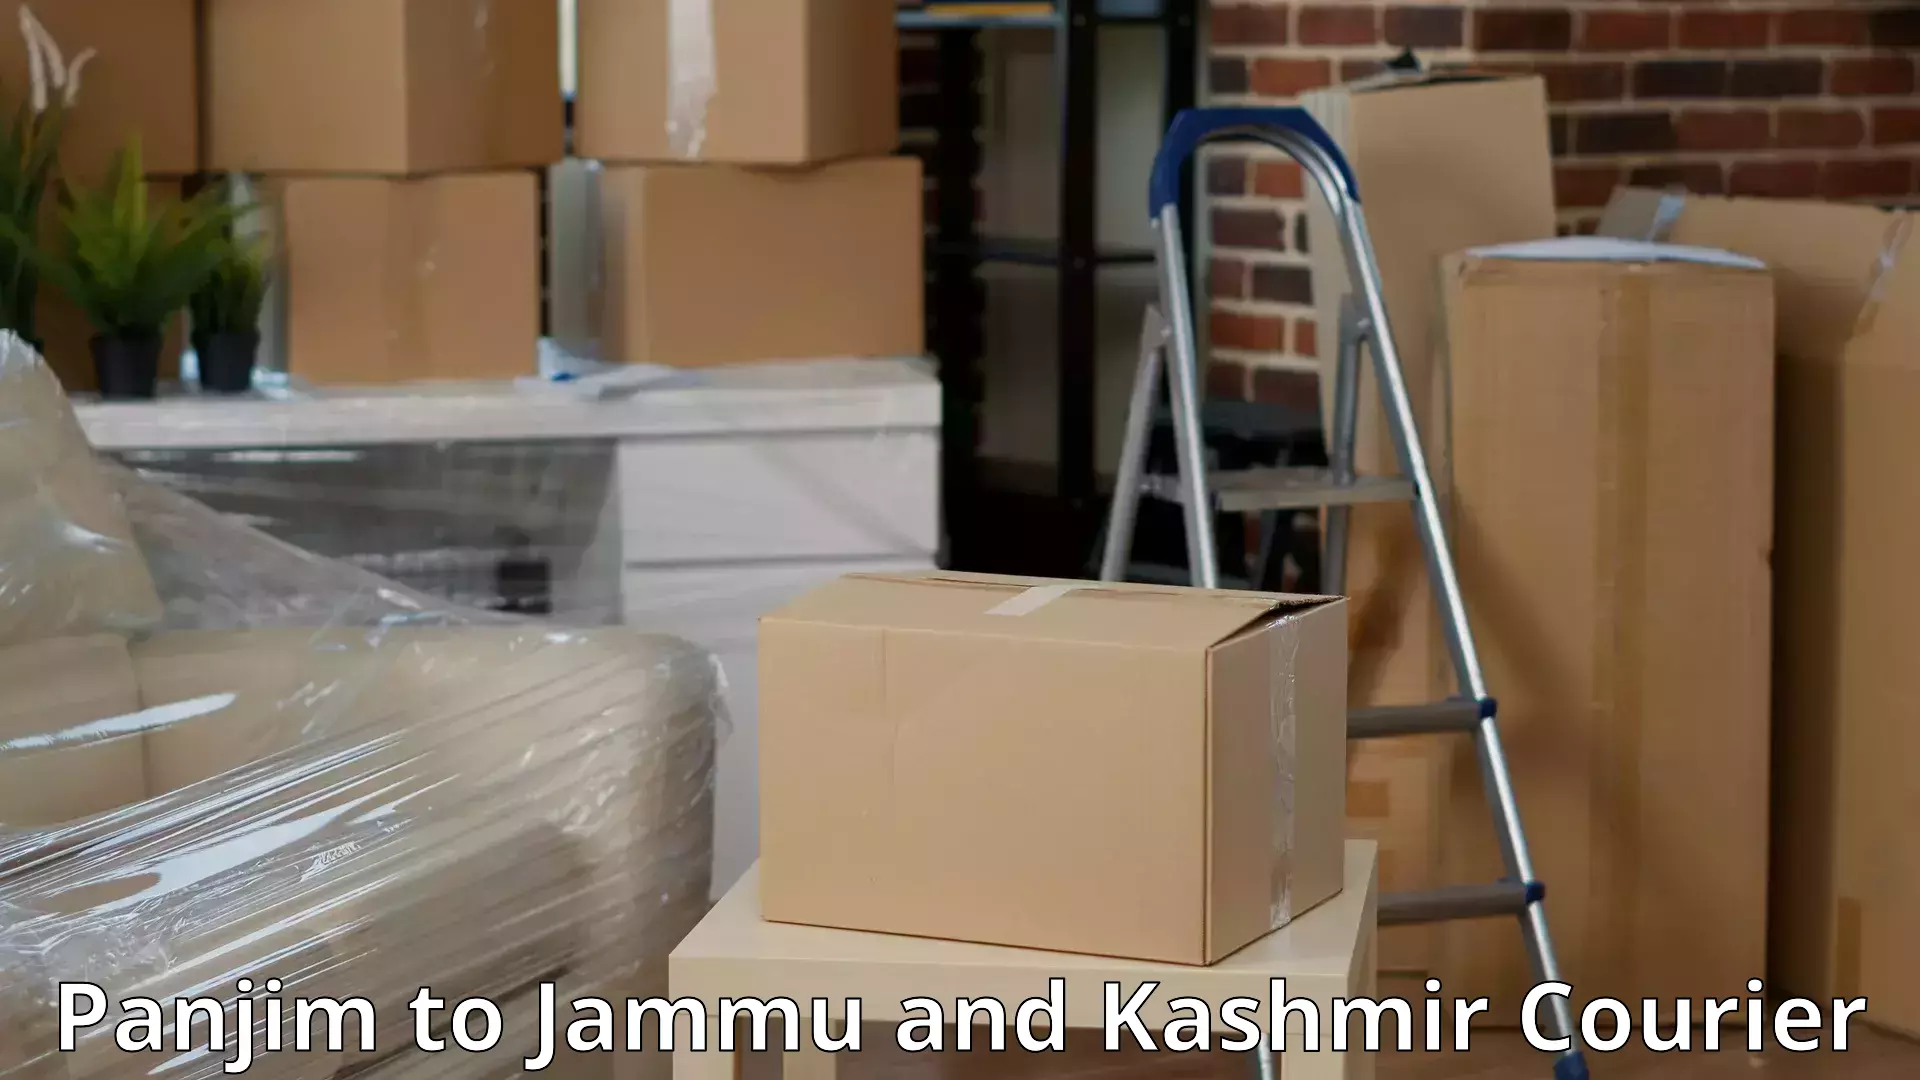 Furniture delivery service Panjim to Ramban